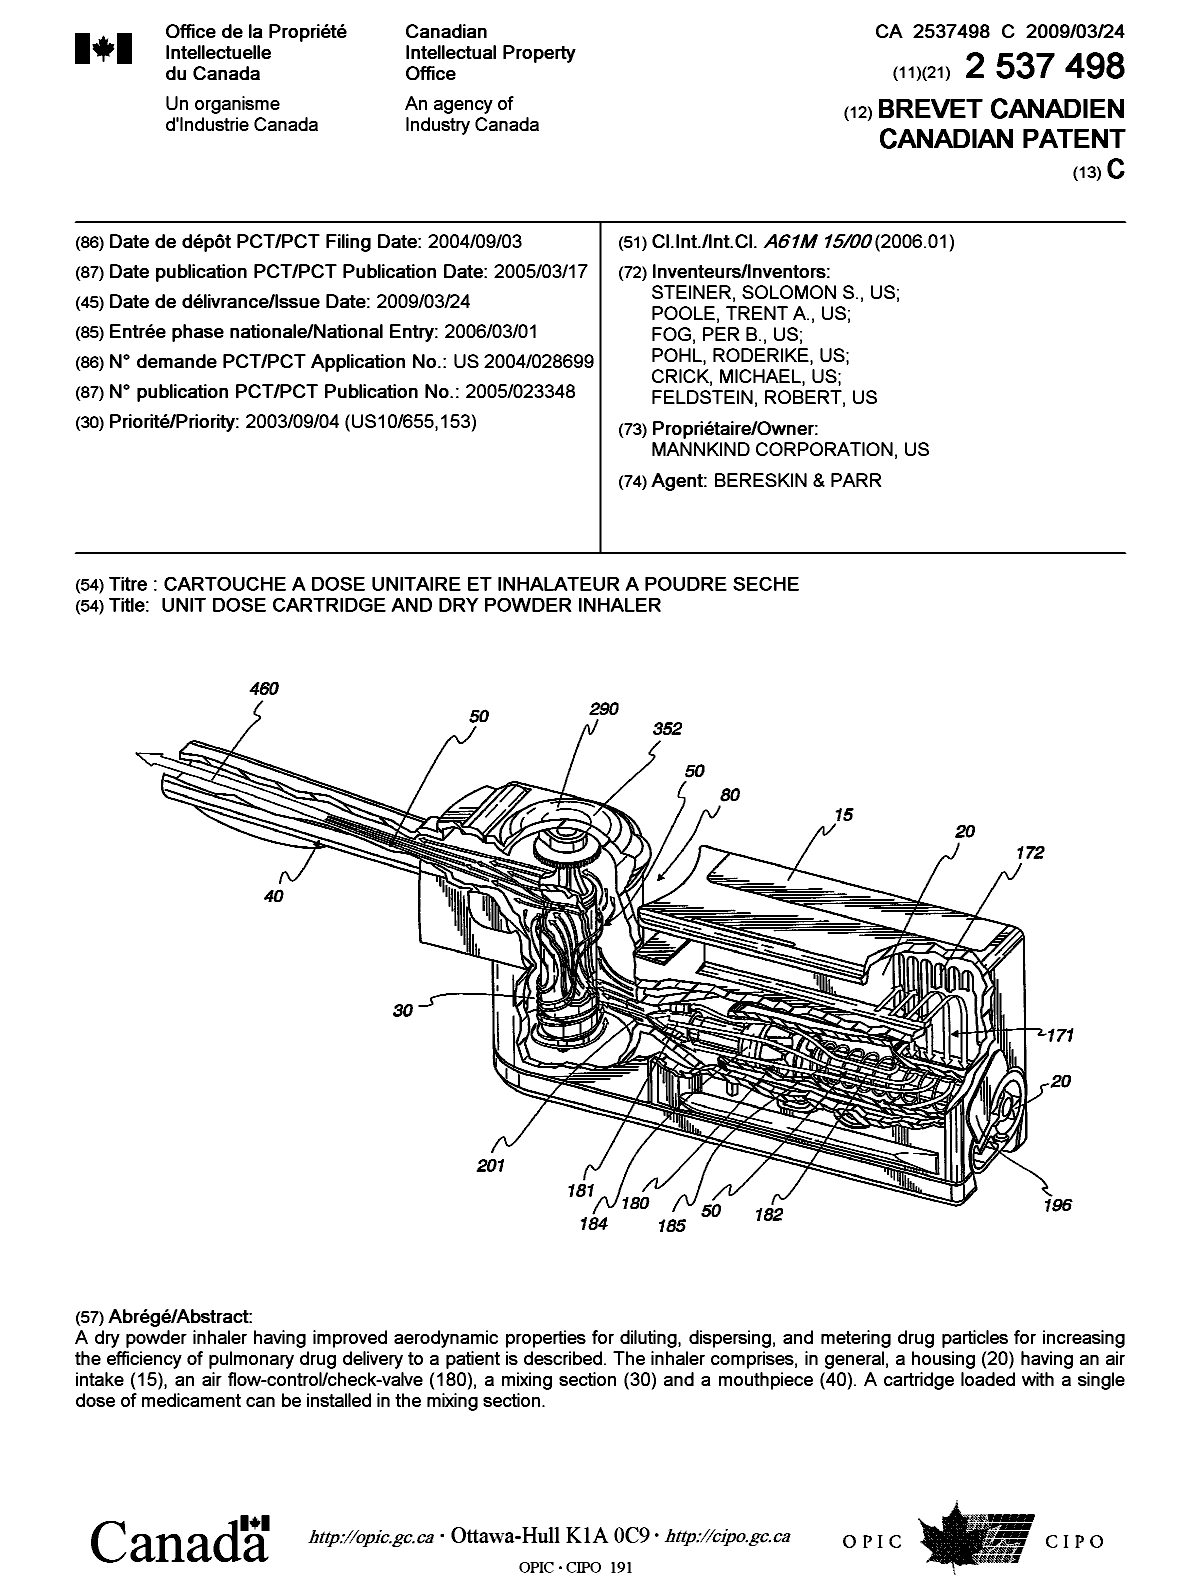 Document de brevet canadien 2537498. Page couverture 20090305. Image 1 de 1